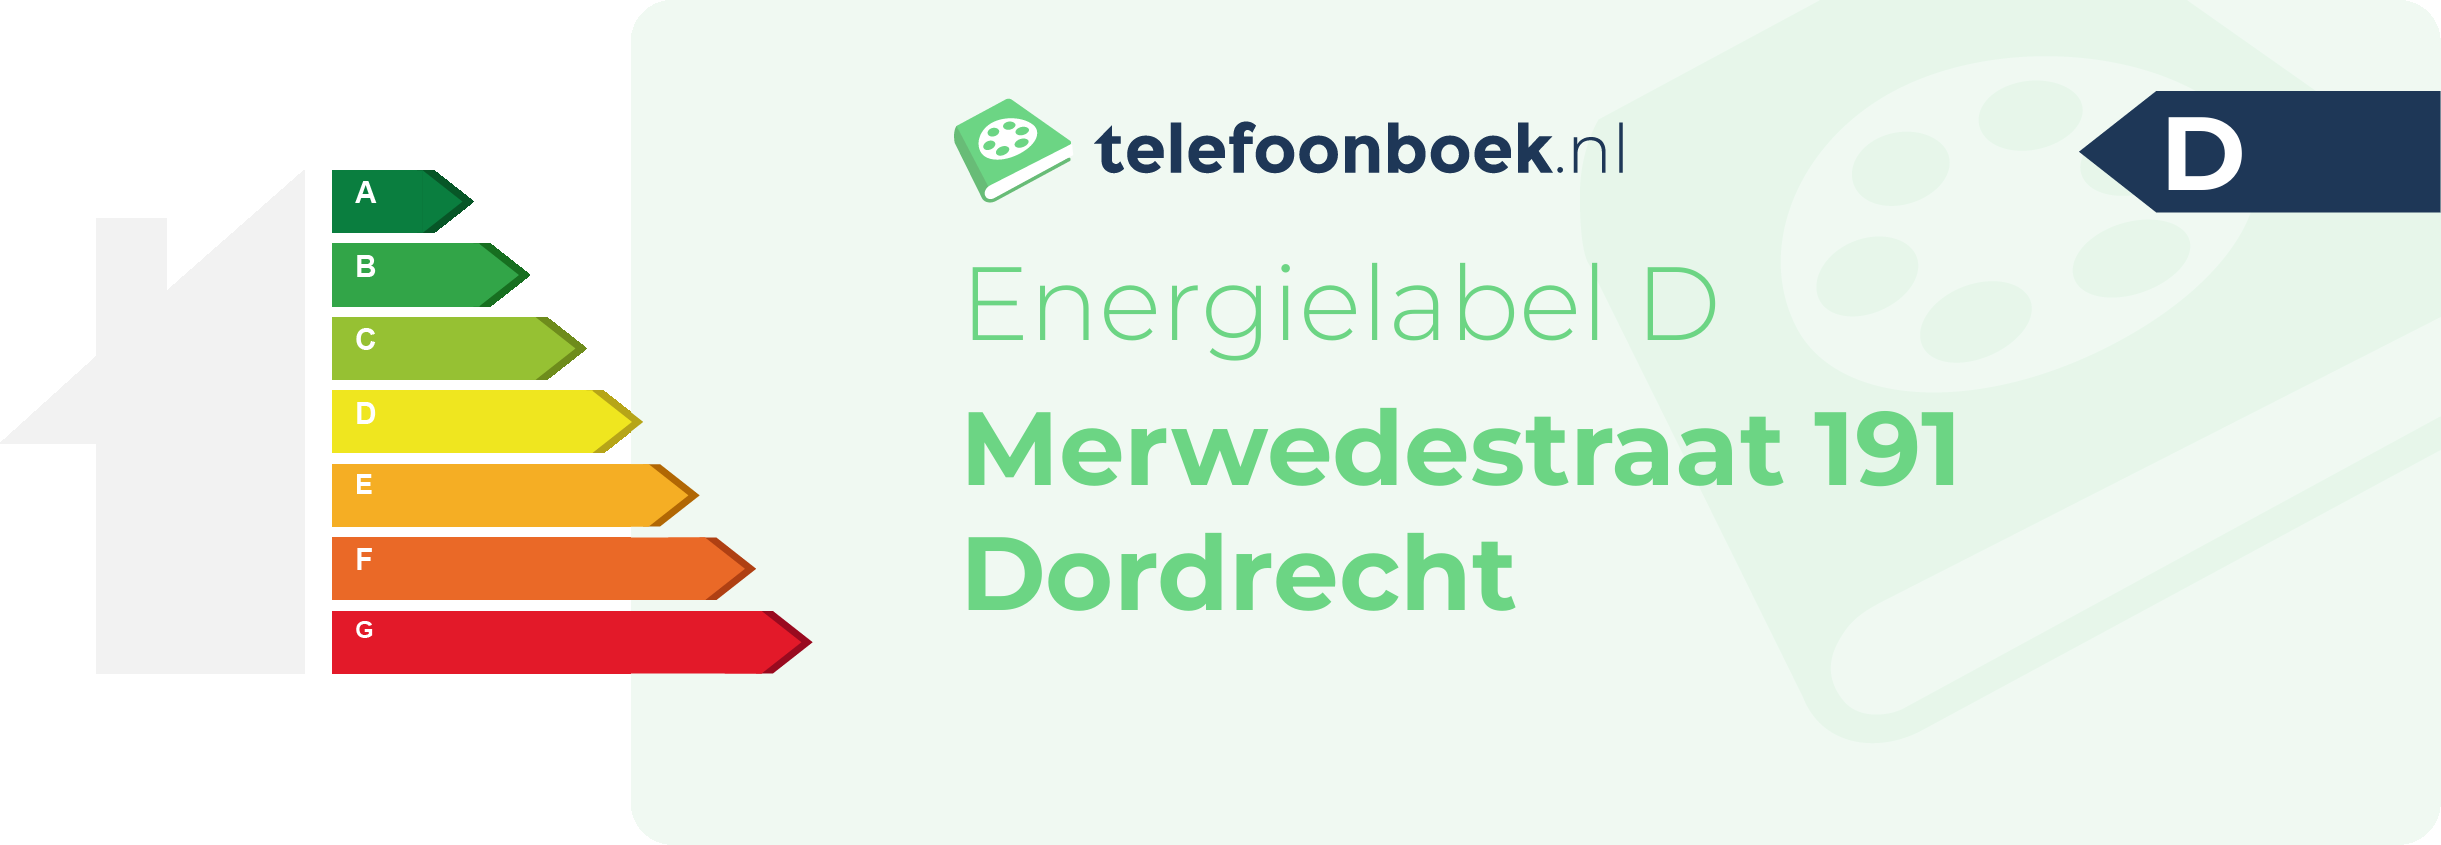 Energielabel Merwedestraat 191 Dordrecht